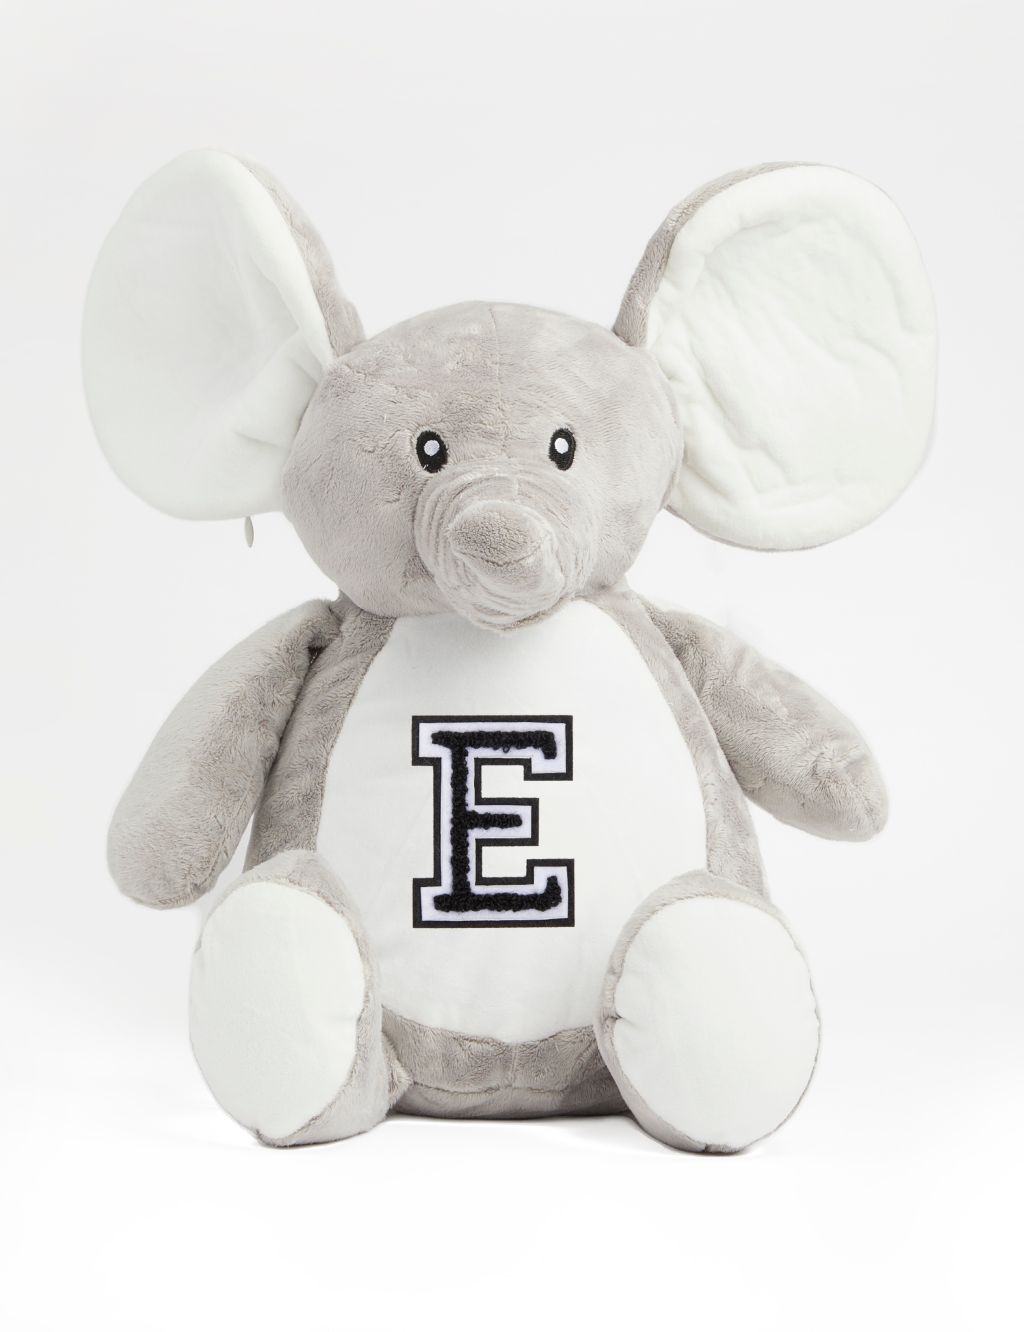 Personalised Soft Plush Elephant 3 of 3